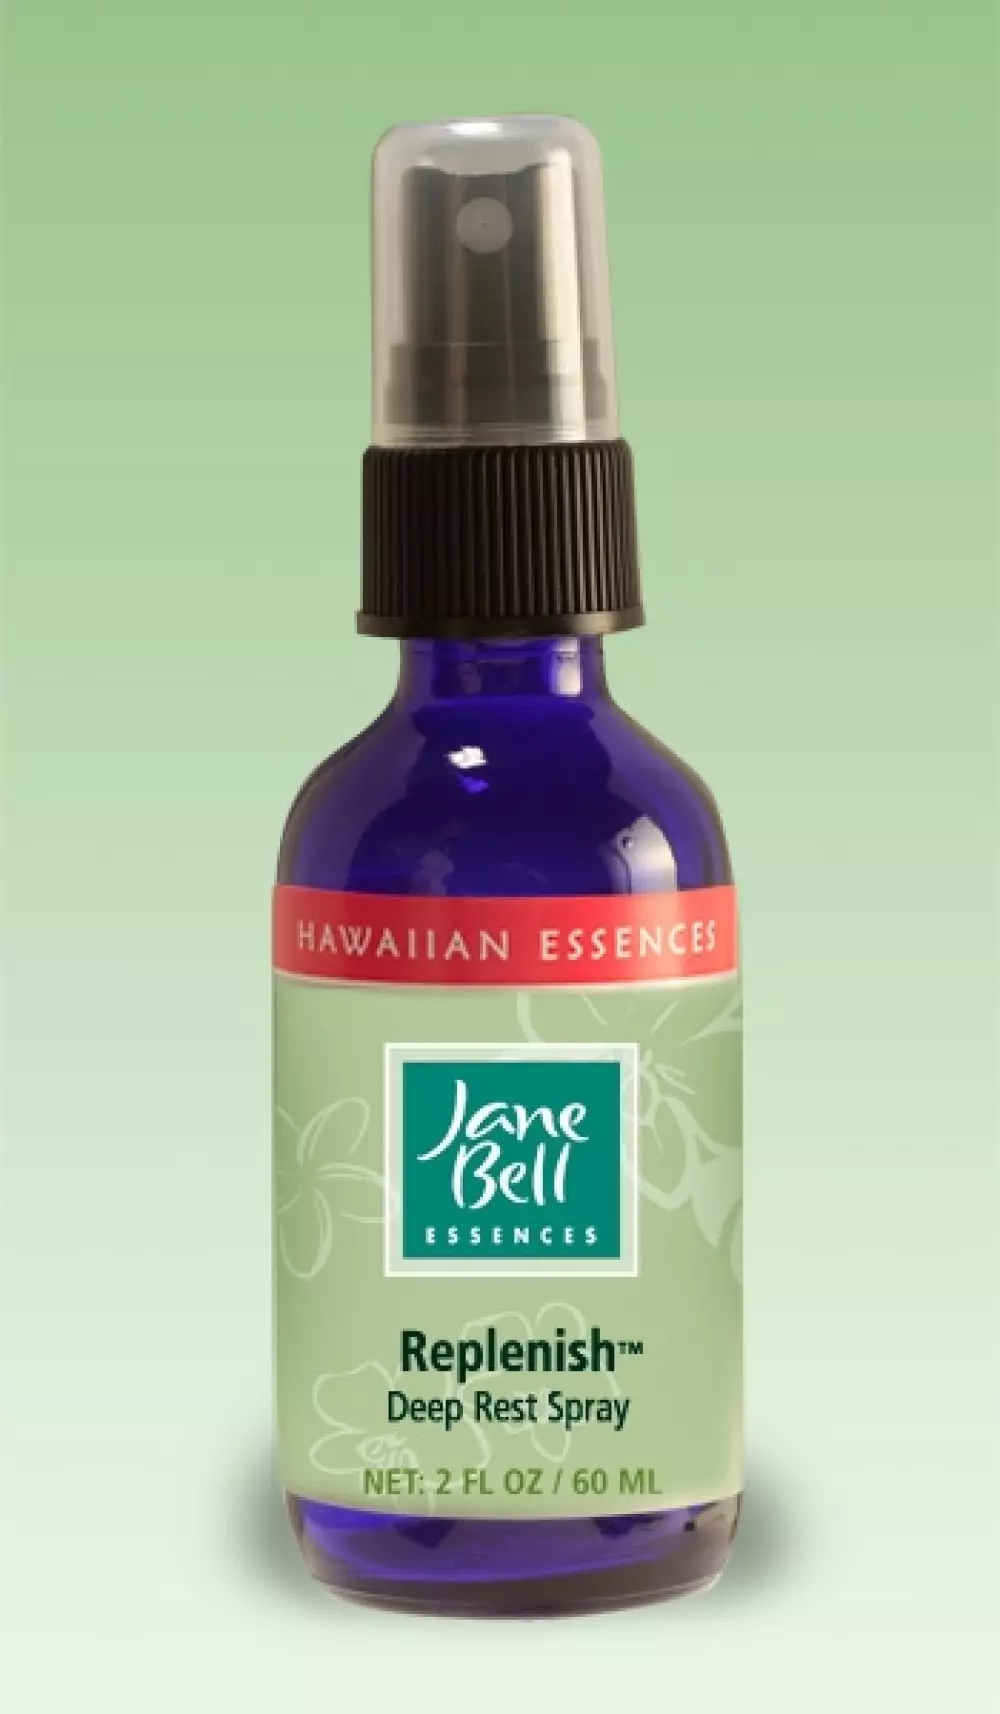 Hawaiian Essences - Replenish 60 ml, Velvære & røkelse, Essenser (Vibrasjonell medisin), Jane Bell - Deep Rest spray